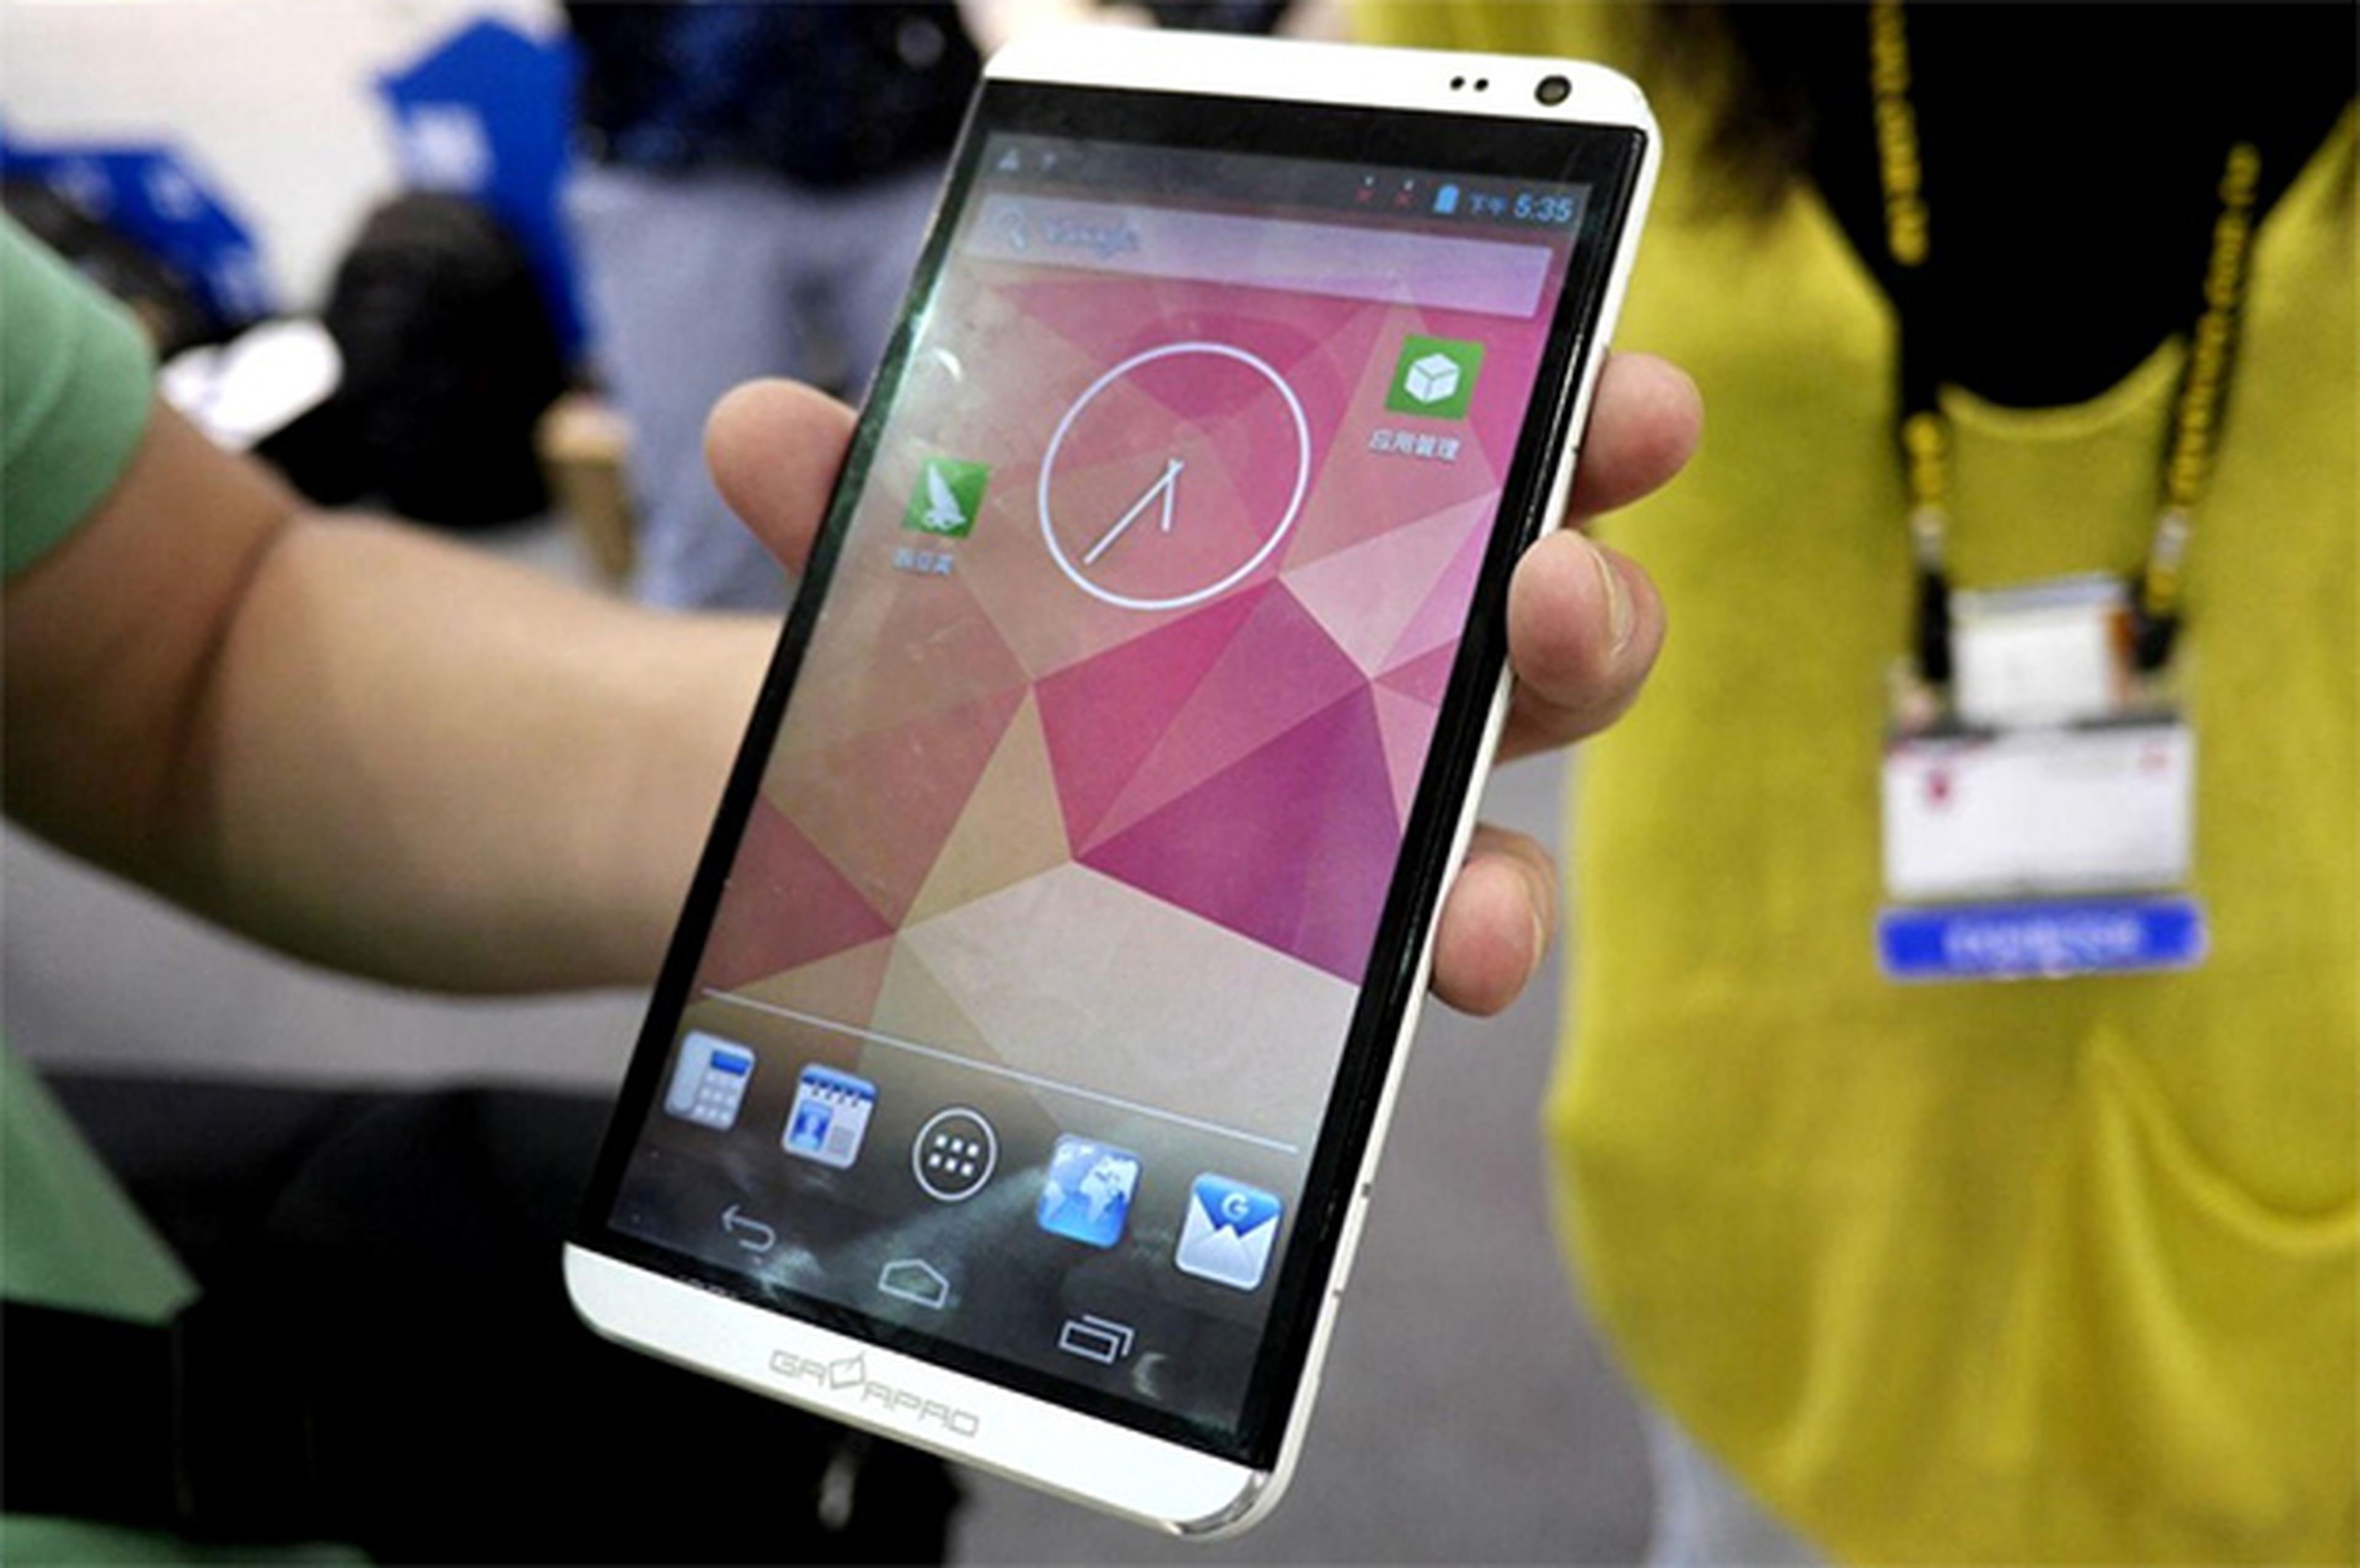 Nuevos rumores sobre las especificaciones del HTC One Max